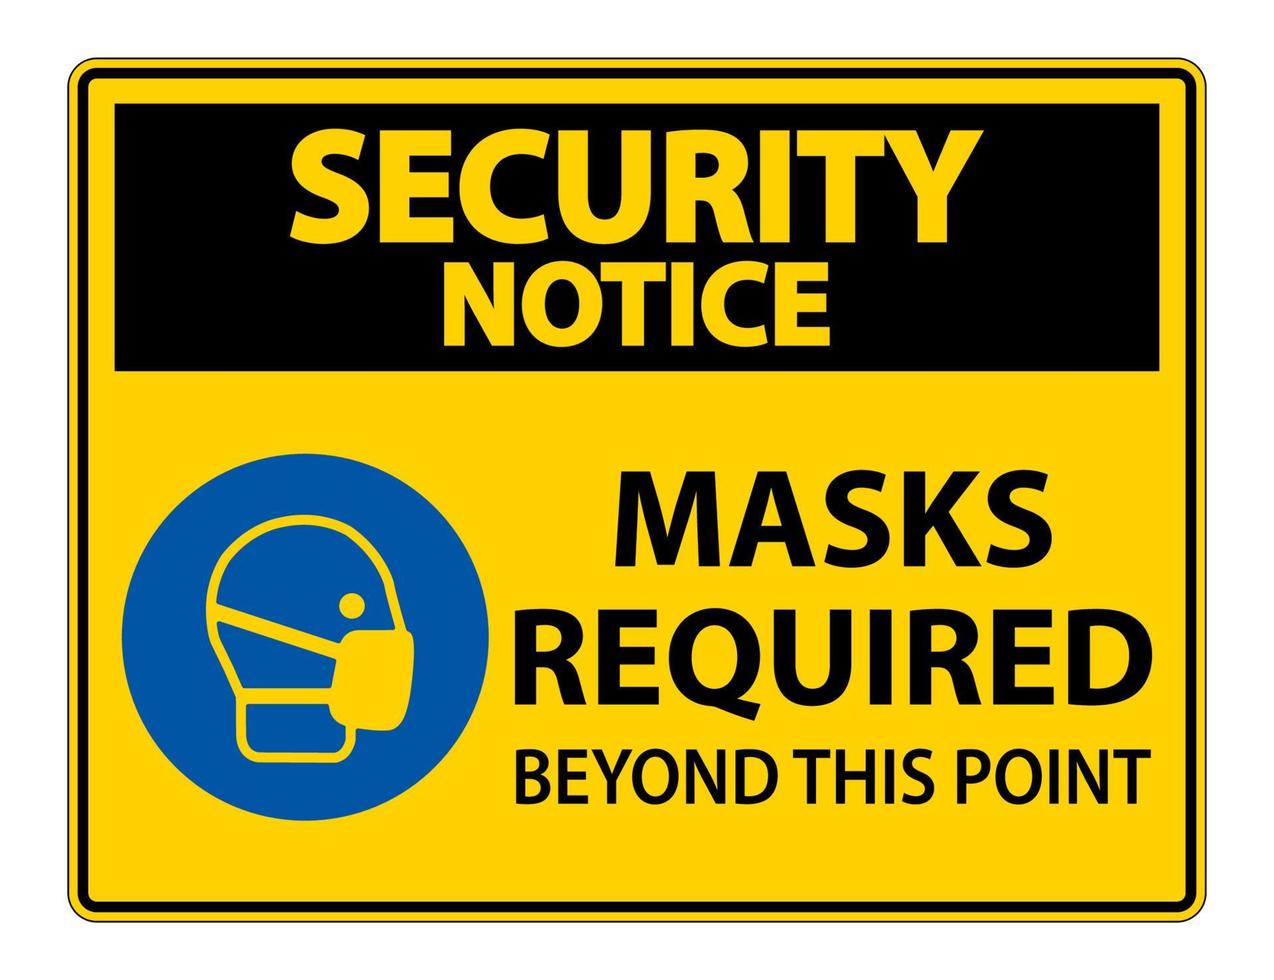 Máscaras de aviso de segurança necessárias além deste sinal de ponto isolado no fundo branco, ilustração vetorial eps.10 vetor